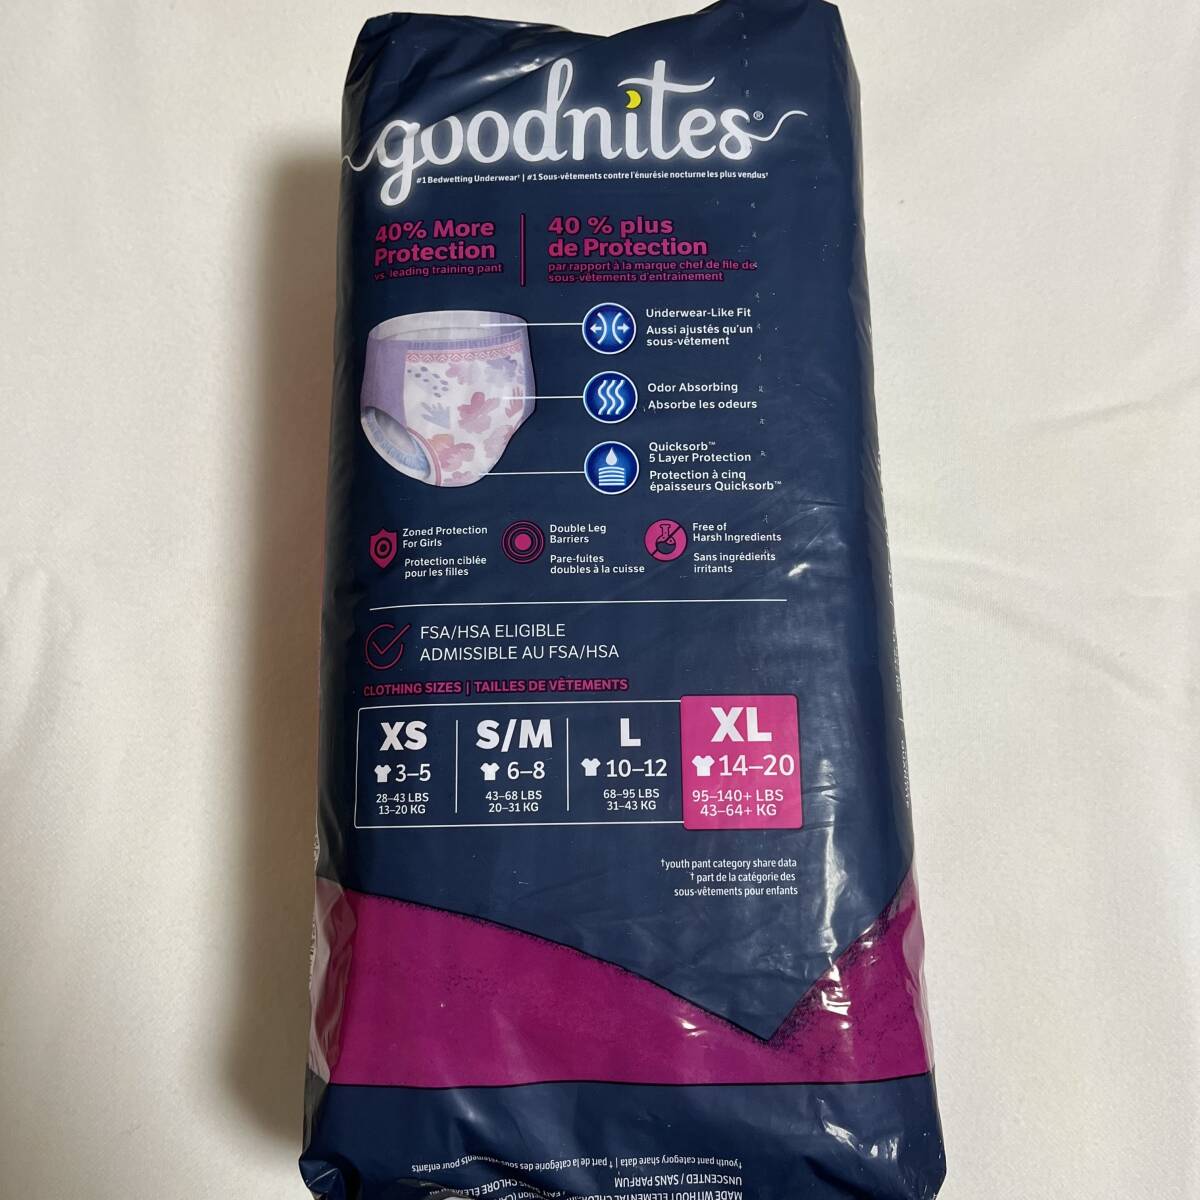 【リニューアル品】【海外の紙おむつ】Goodnites XL(43-64kg) 女の子用 9枚(1パック)【新品未開封】